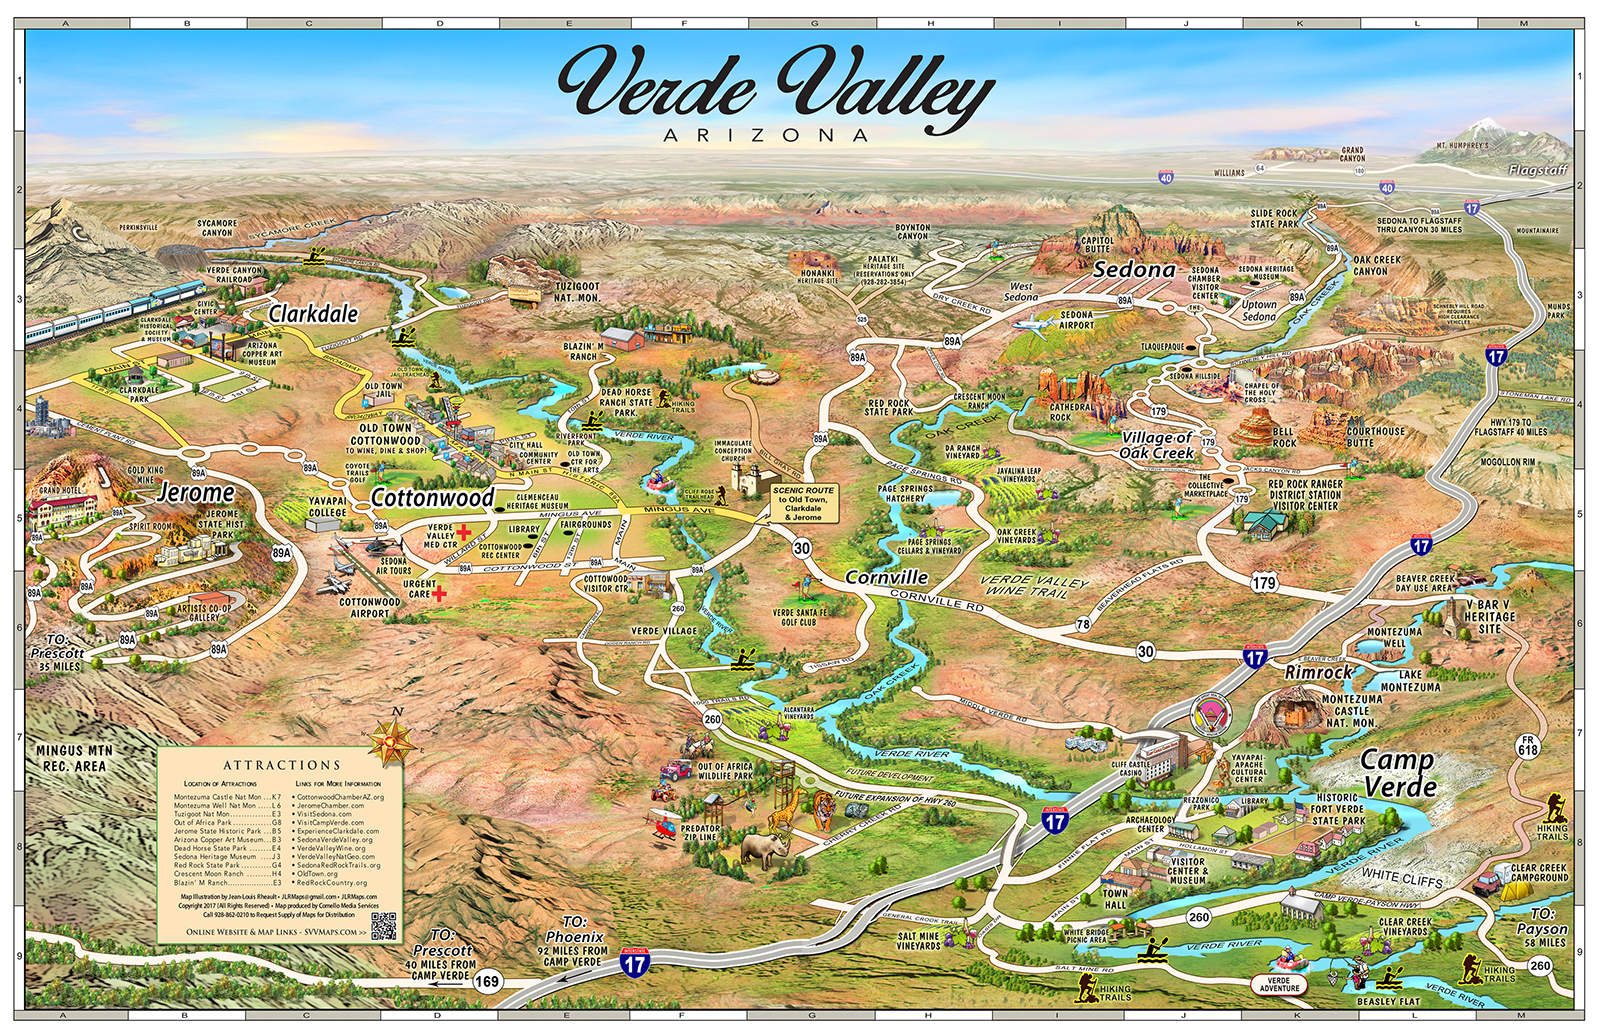 Map of the Verde Valley Arizona - El Portal Sedona Hotel